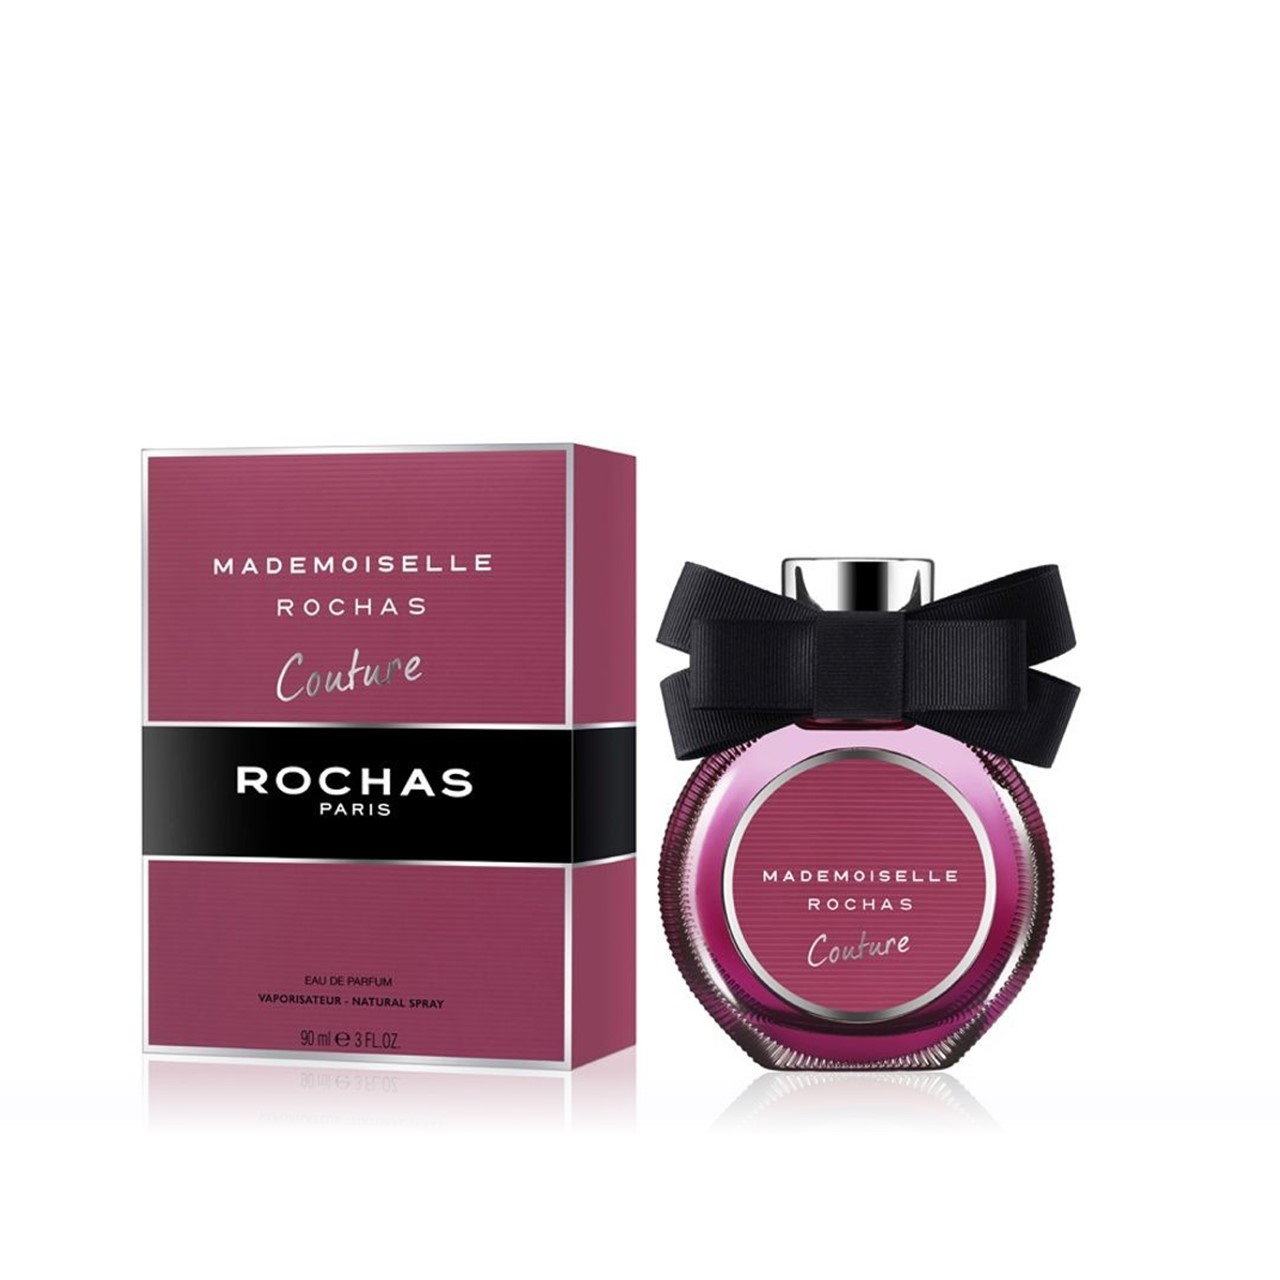 Rochas Mademoiselle Rochas Couture Eau de Parfum 90ml (3.0fl oz)